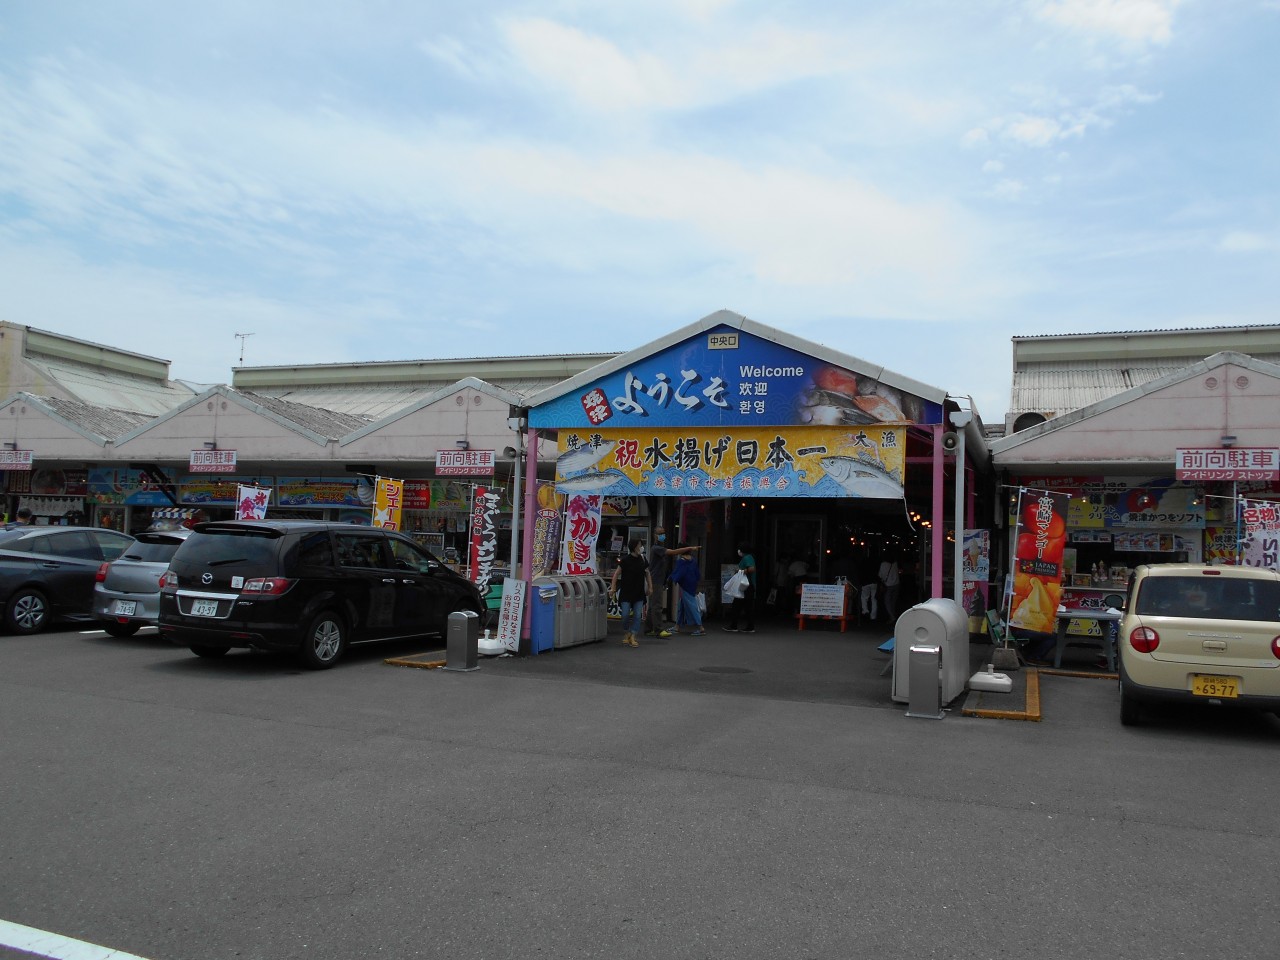 燒津さかなセンターは海鮮グルメの街